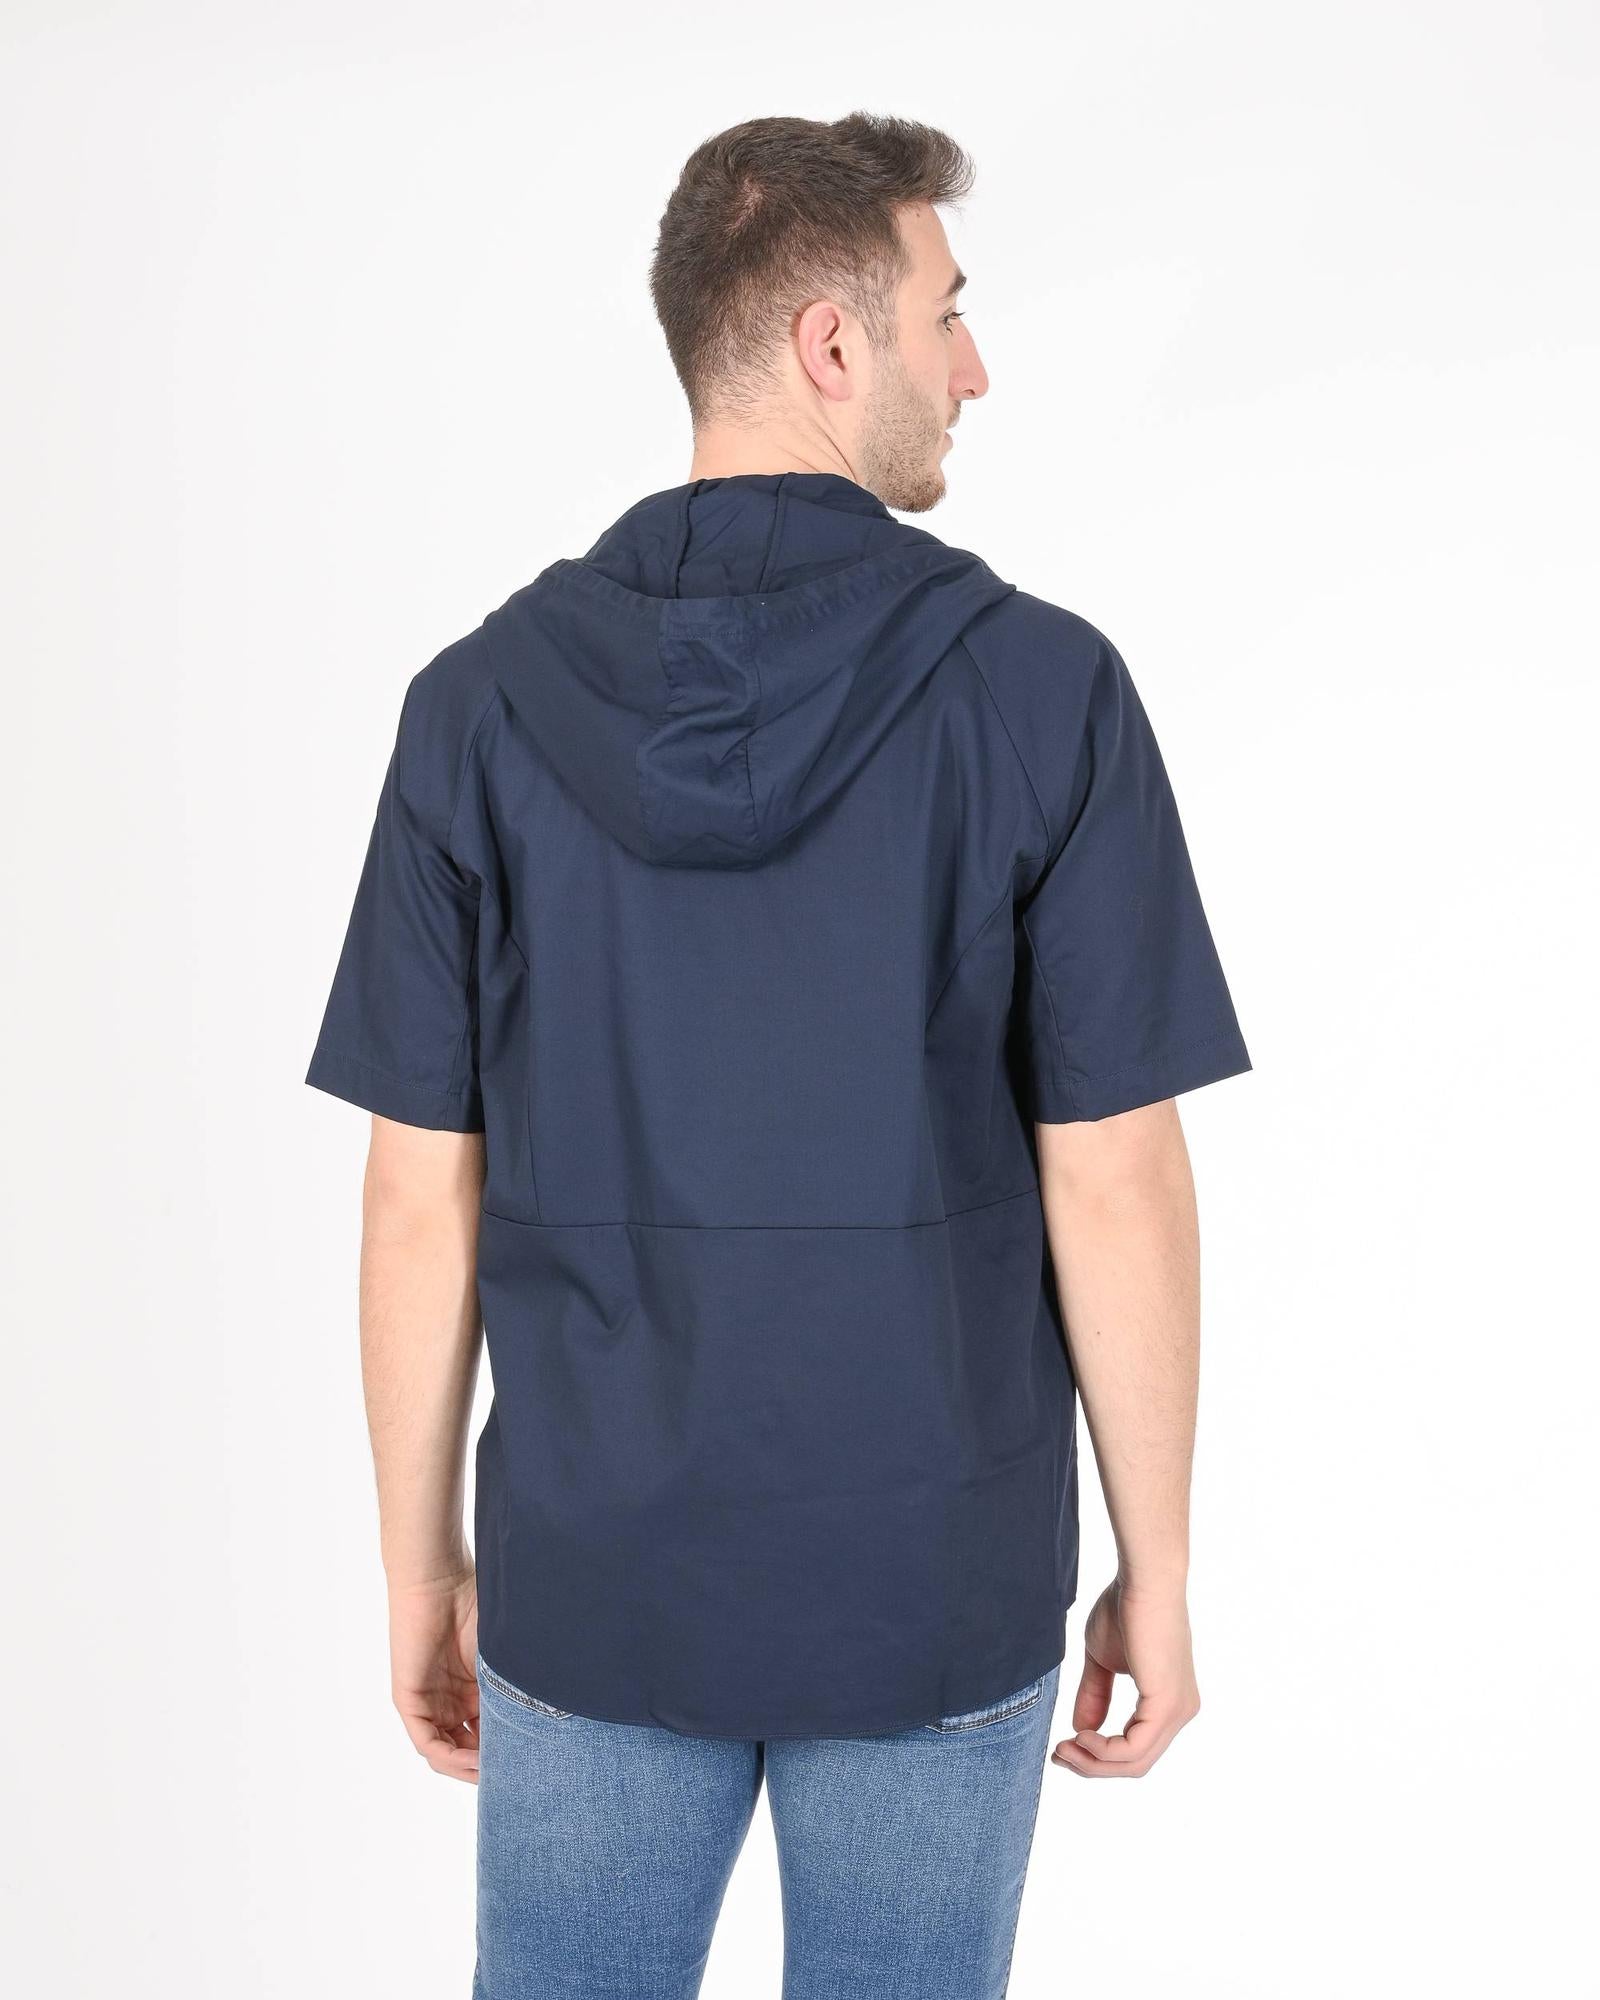 Men's Cotton Blend Navy Shirt in Navy blue - XL